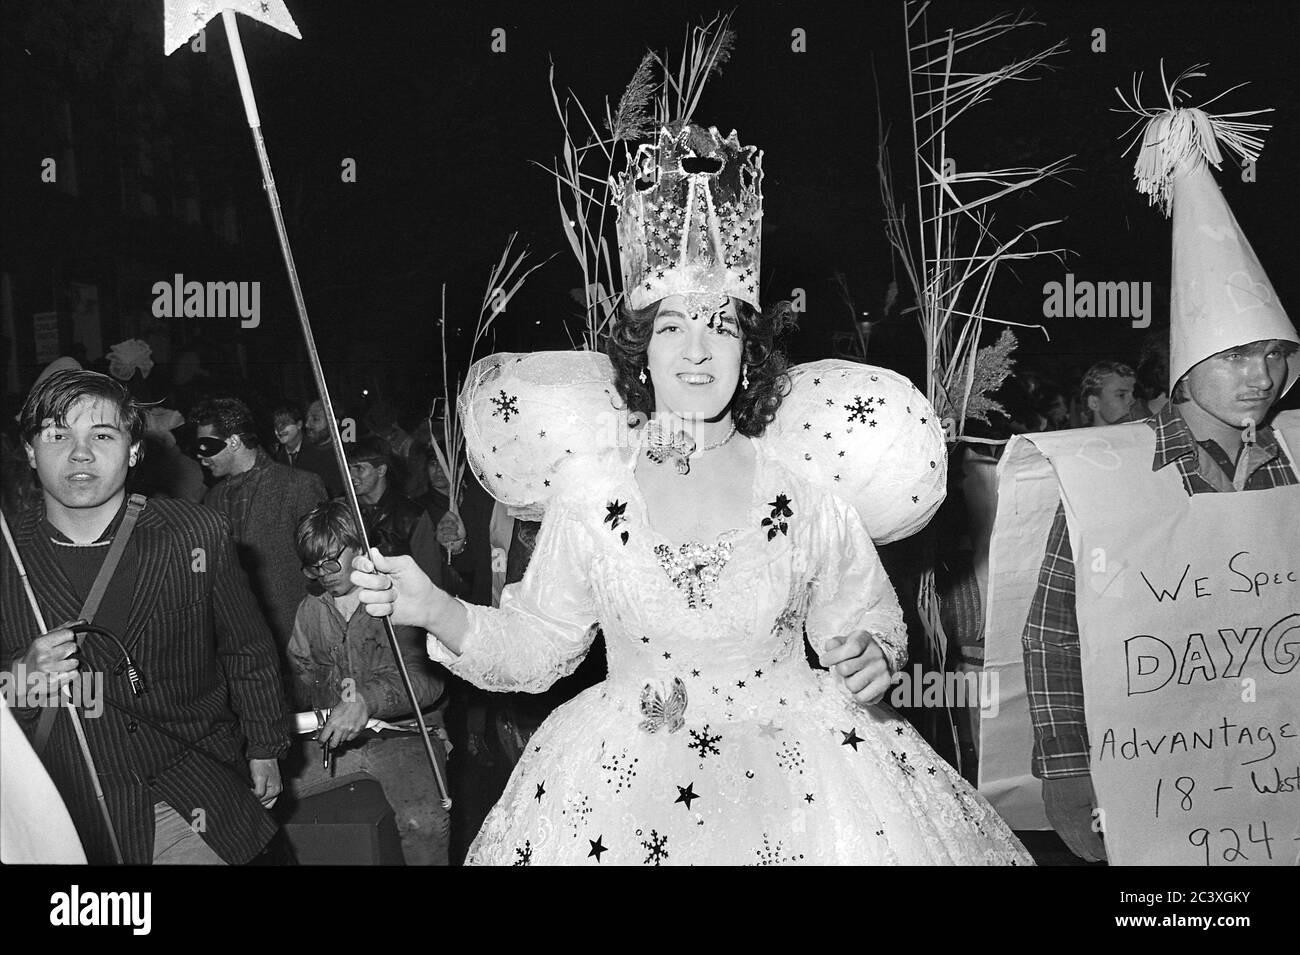 Uomo come Madre di Dio della fata alla Greenwich Village Halloween Parade, New York City, USA negli anni '80 fotografato con film in bianco e nero di notte. Foto Stock